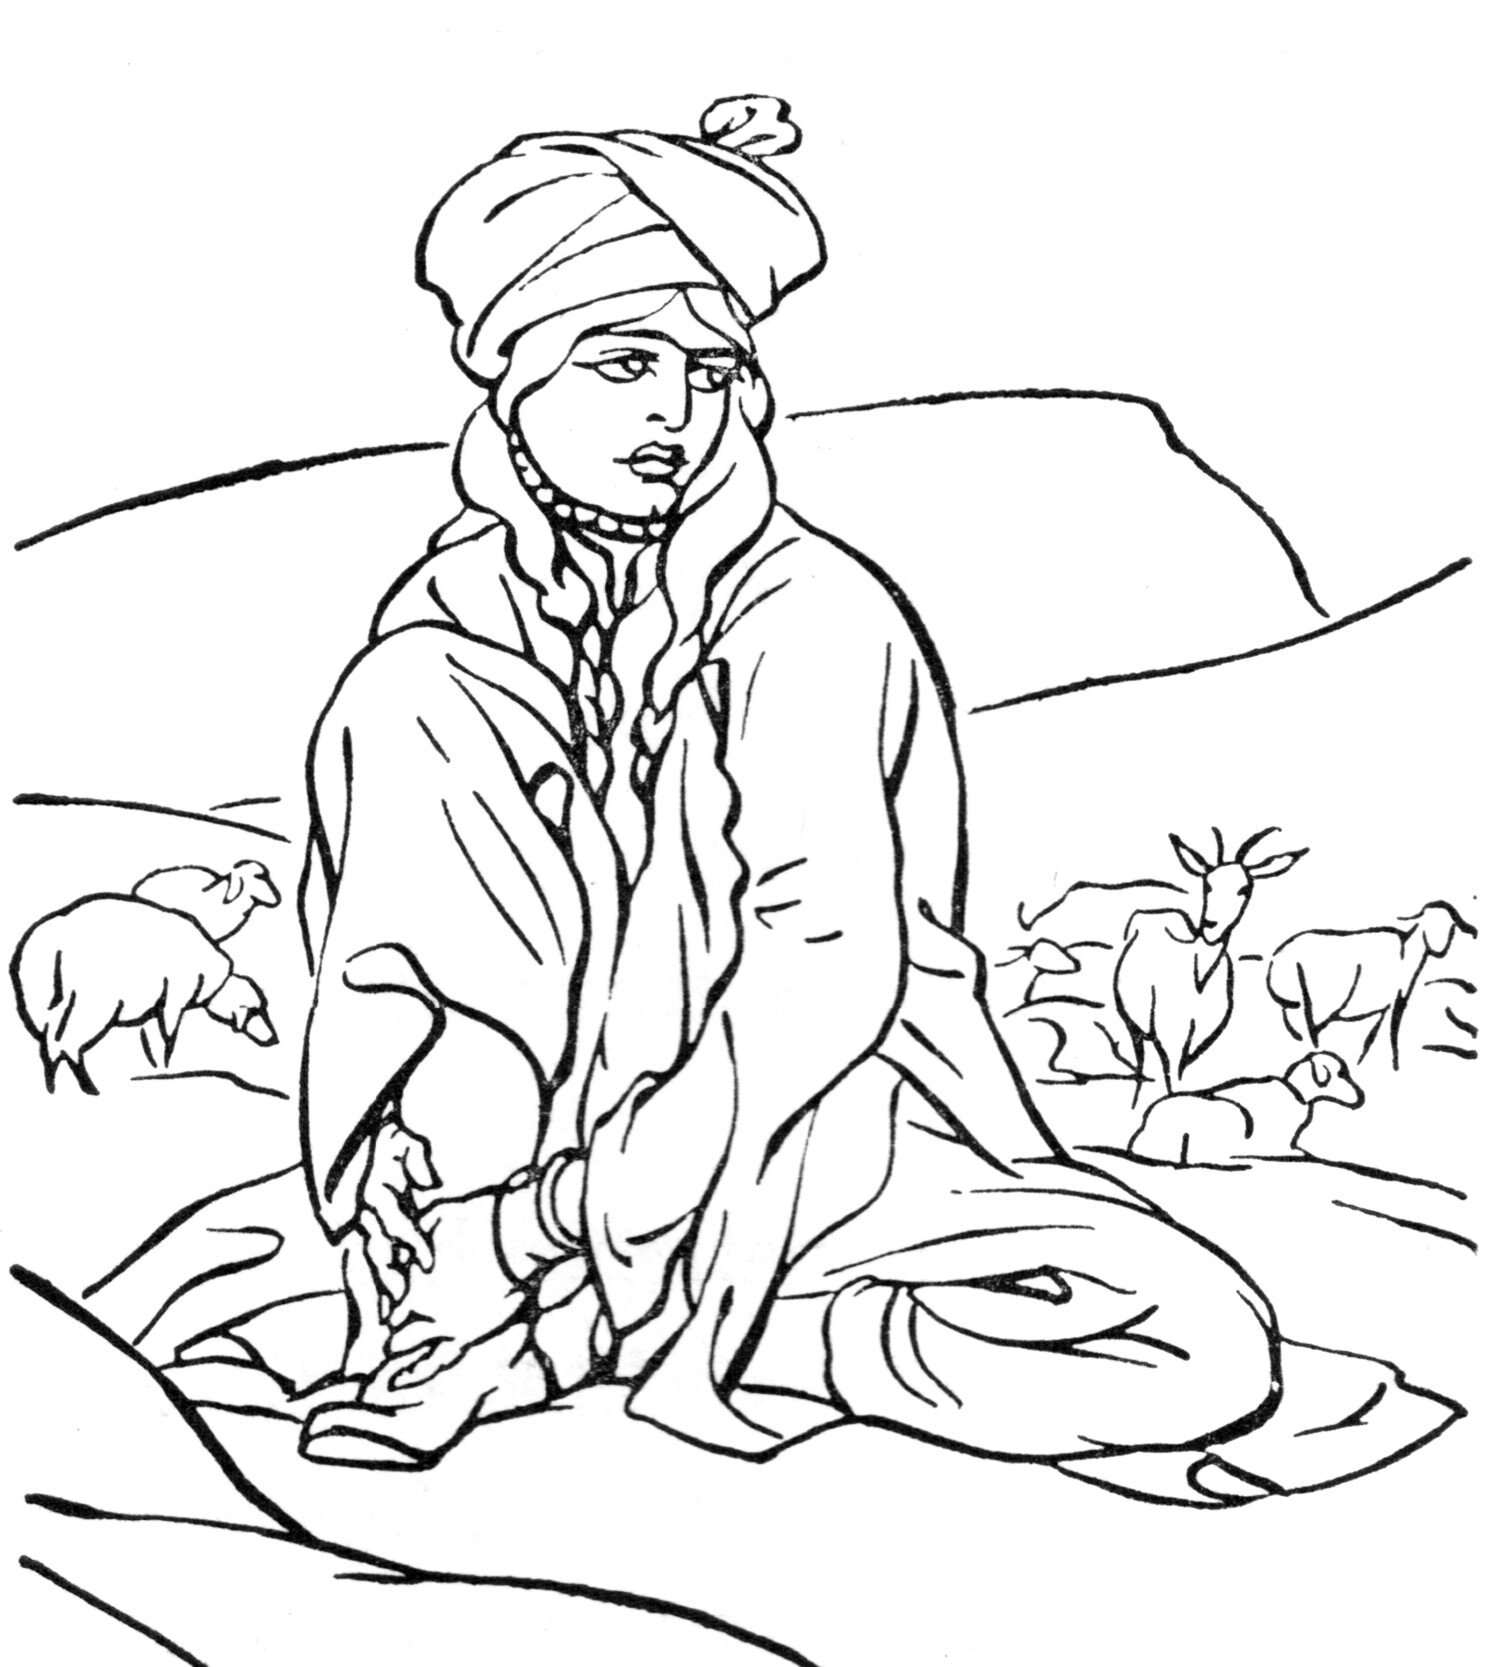 Hajji-Baba-ch-24-illustration.jpg